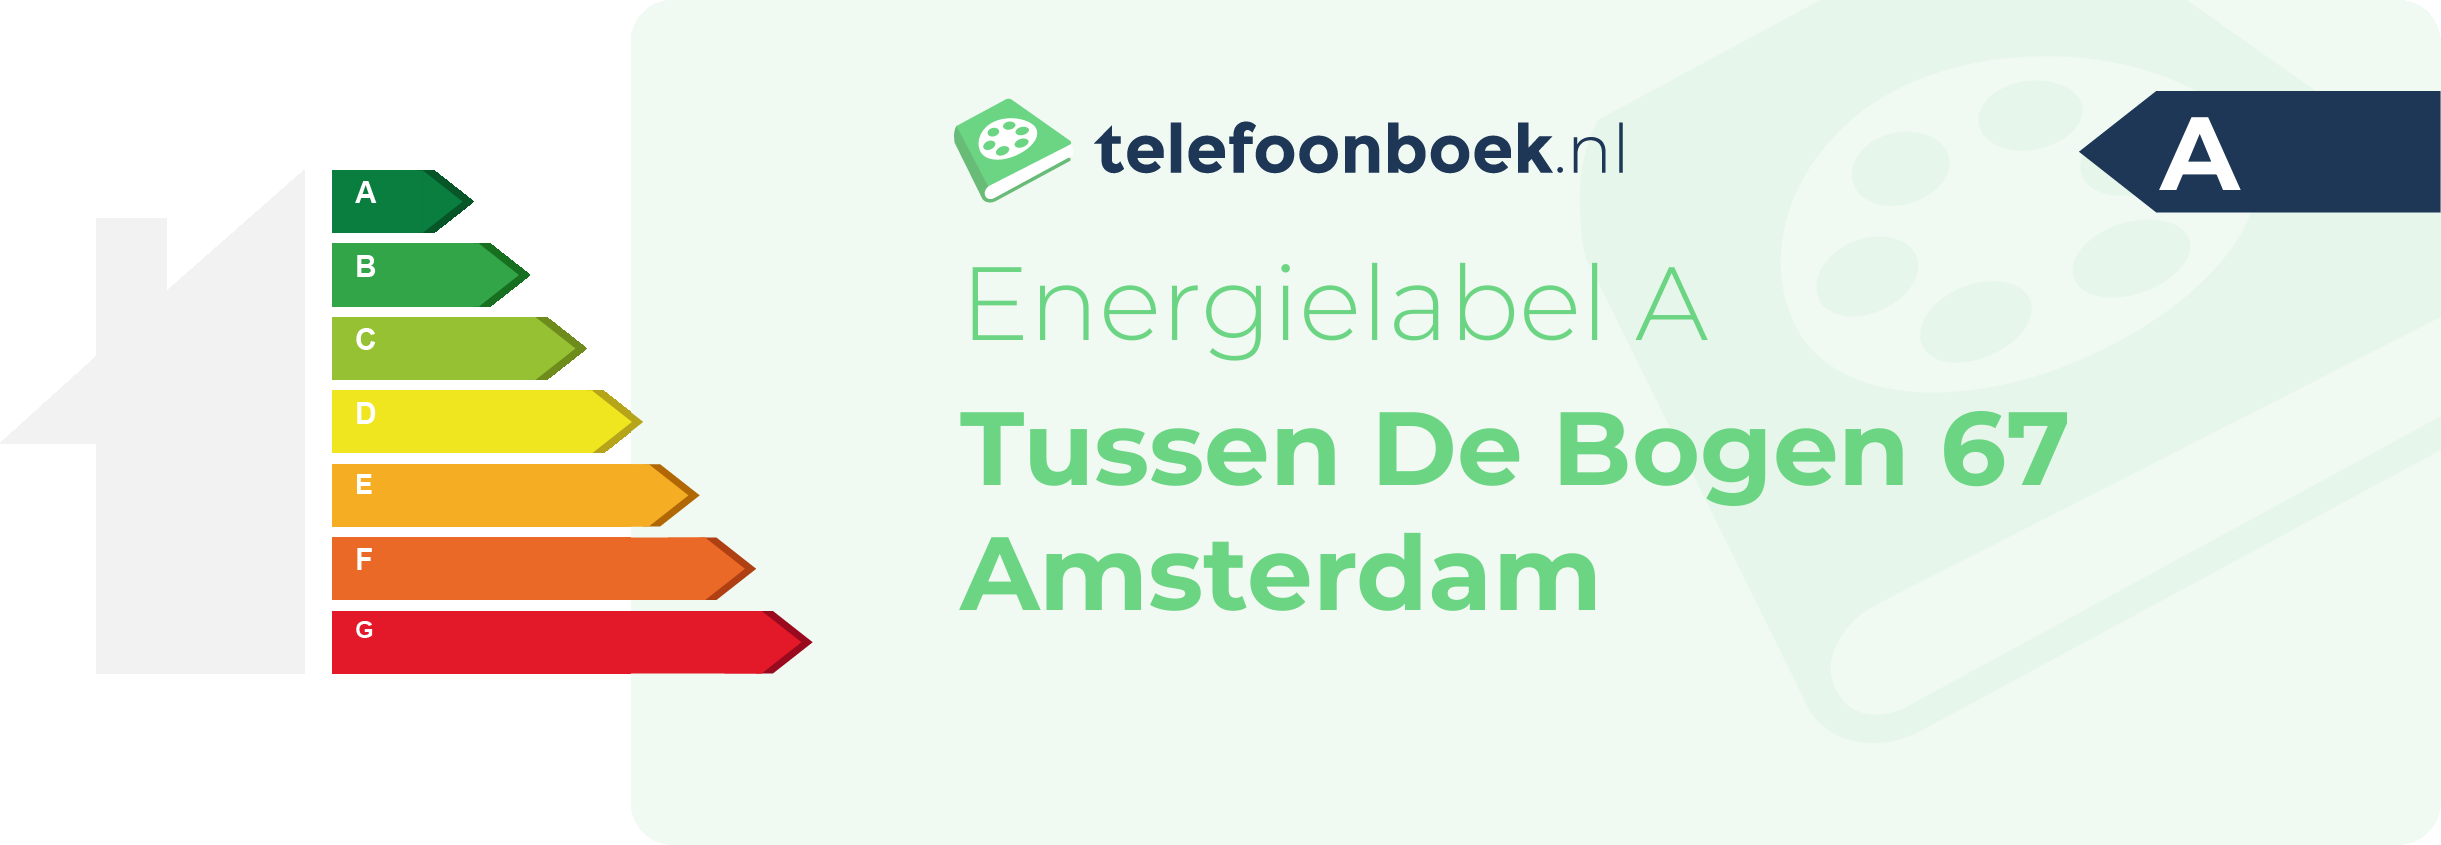 Energielabel Tussen De Bogen 67 Amsterdam